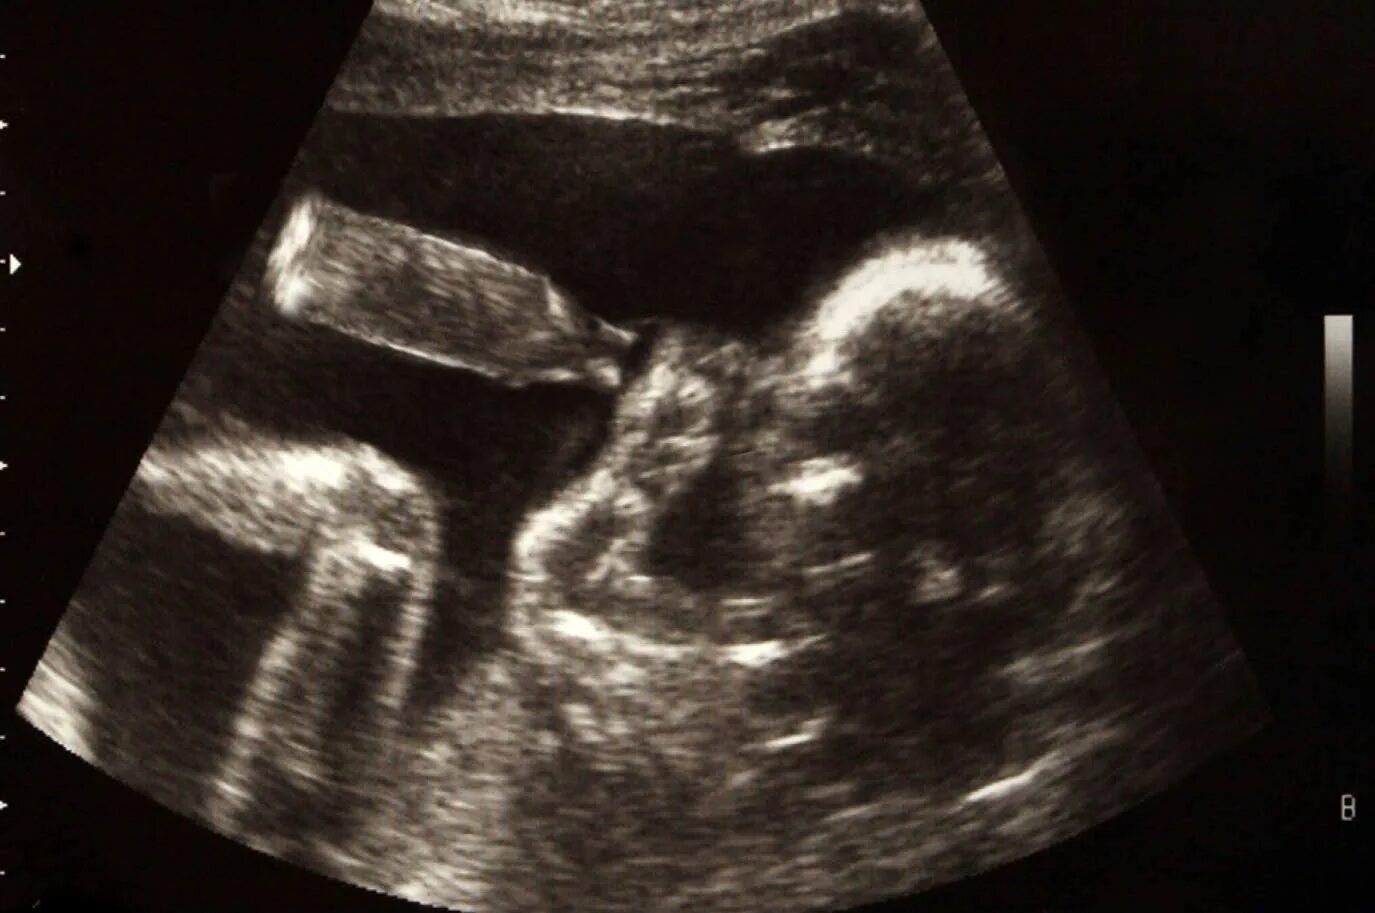 УЗИ двойни на 20 неделе беременности. УЗИ 19 недель беременности двойня. УЗИ ребенка на 20 неделе беременности фото двойня. УЗИ 15 недель беременности двойня. Узи 29 недель